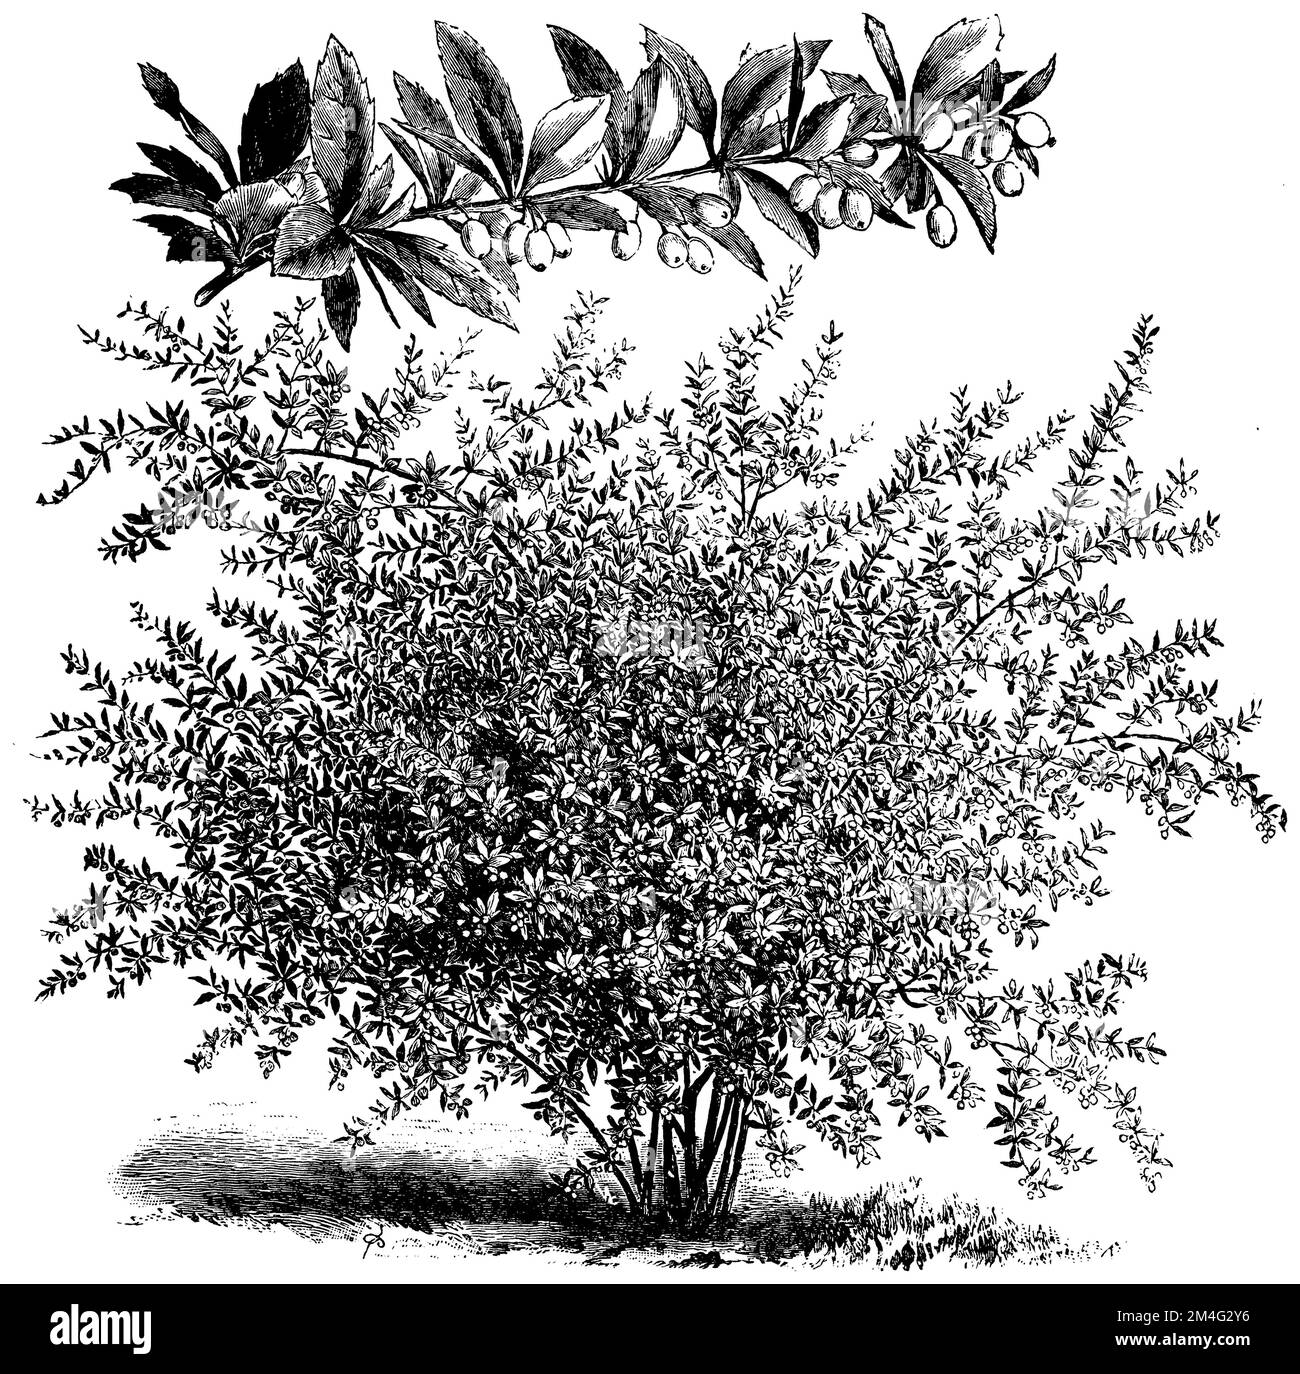 Berberis pruinosa, Berberis pruinosa,  (printing pattern book, 1911), Bereifte Berberitze, Berberis pruinosa Stock Photo